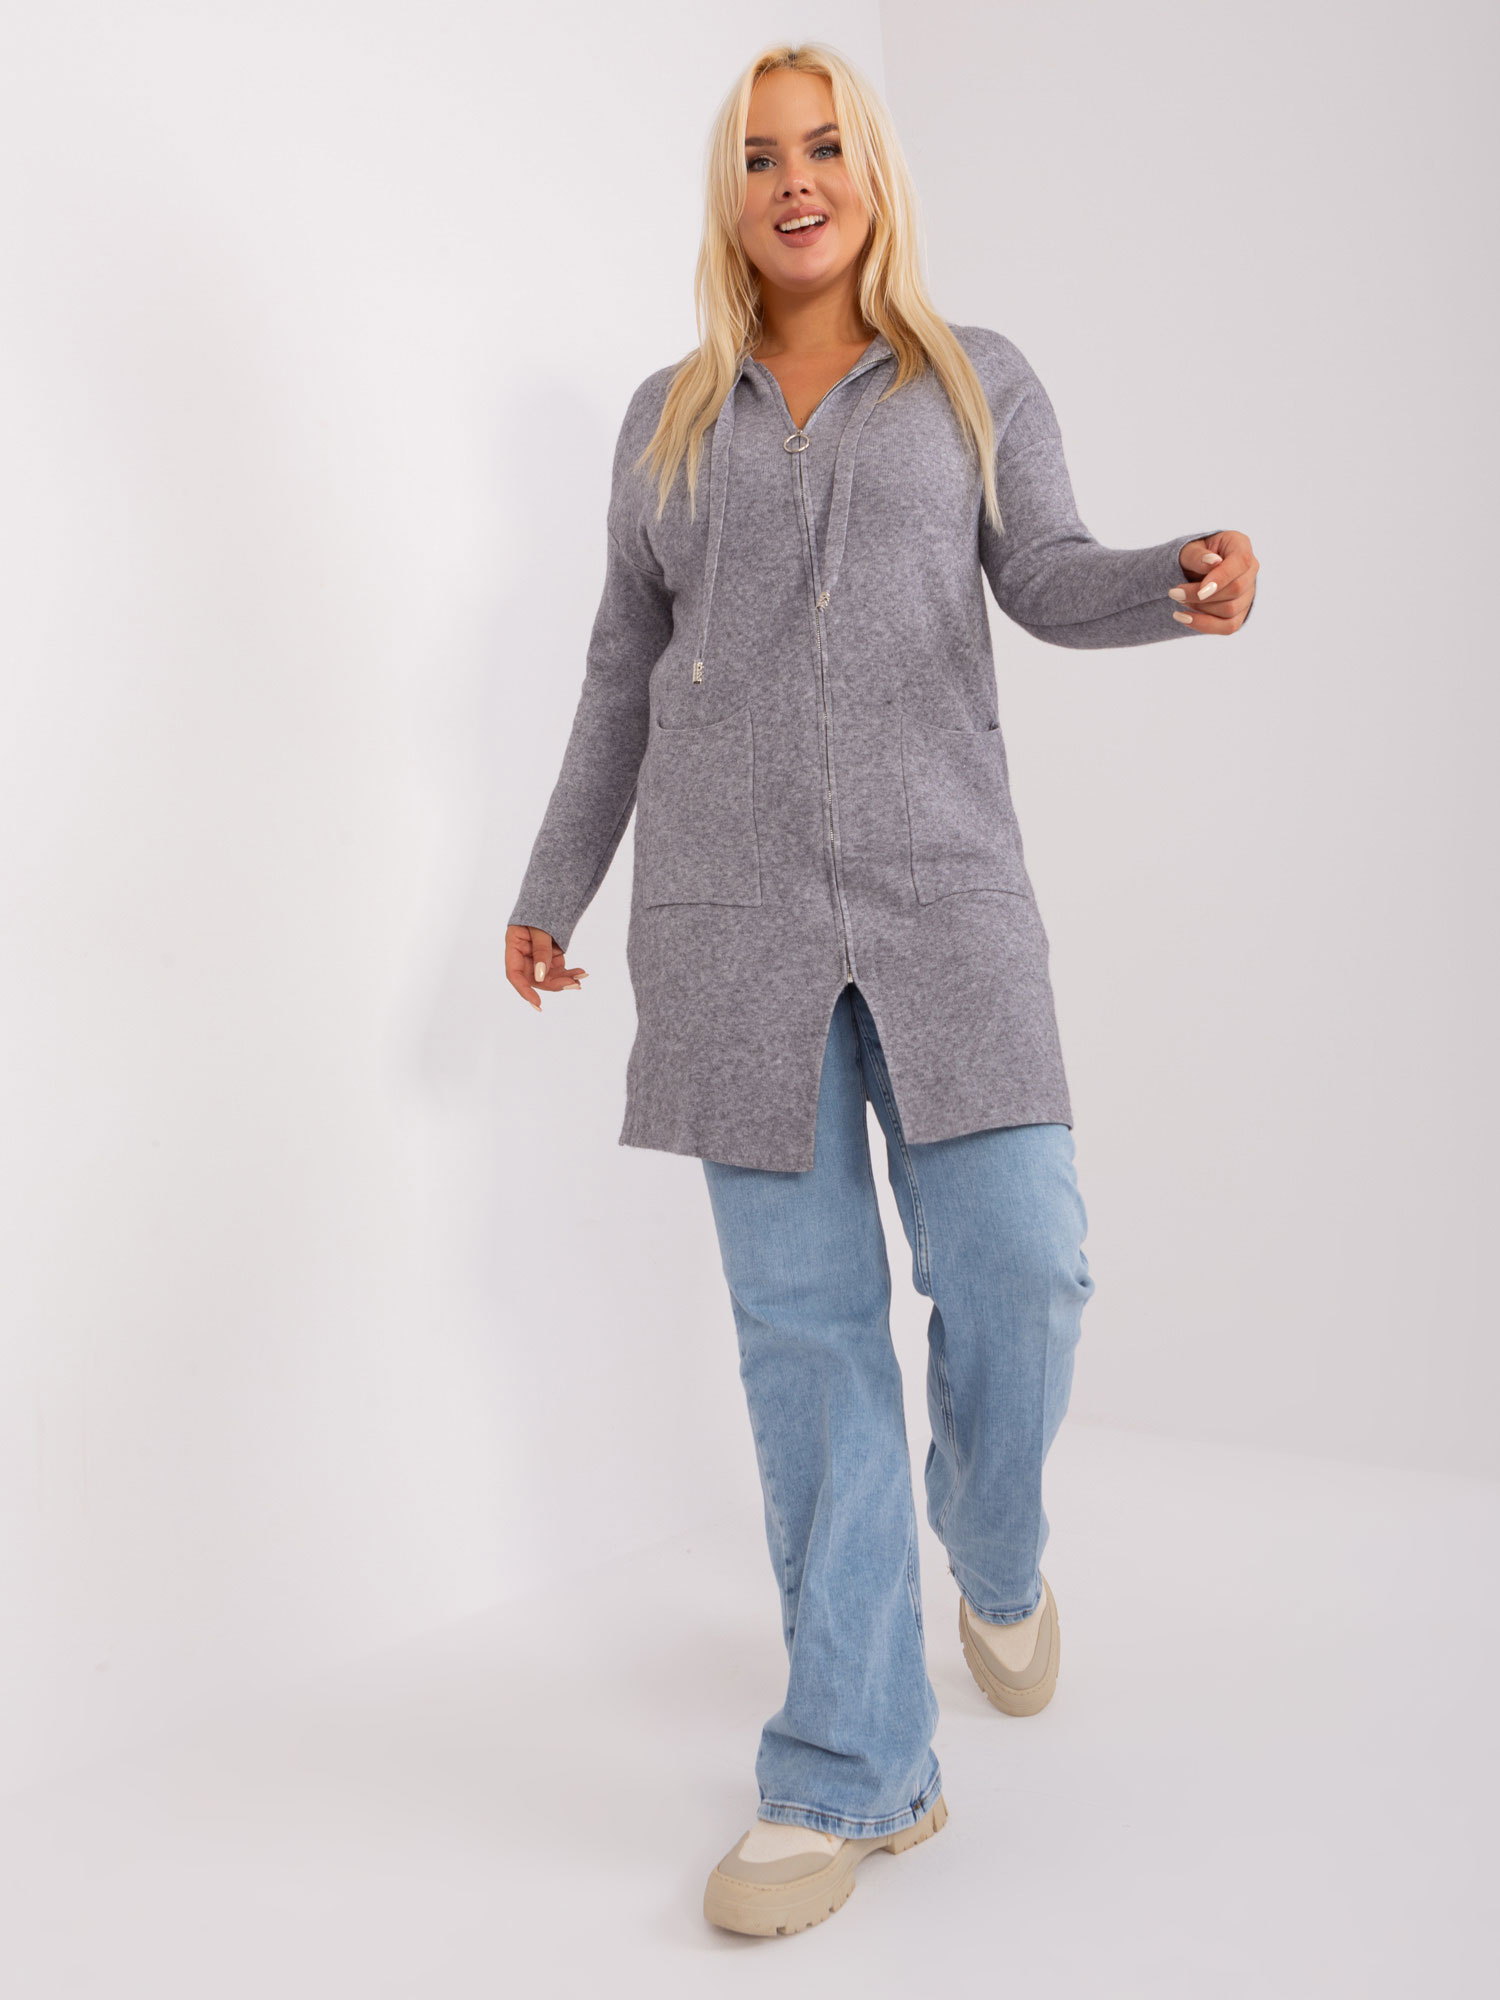 Sivý dlhší sveter na zips s vreckami PM-SW-PM-3733.17-grey Veľkosť: 2XL/3XL